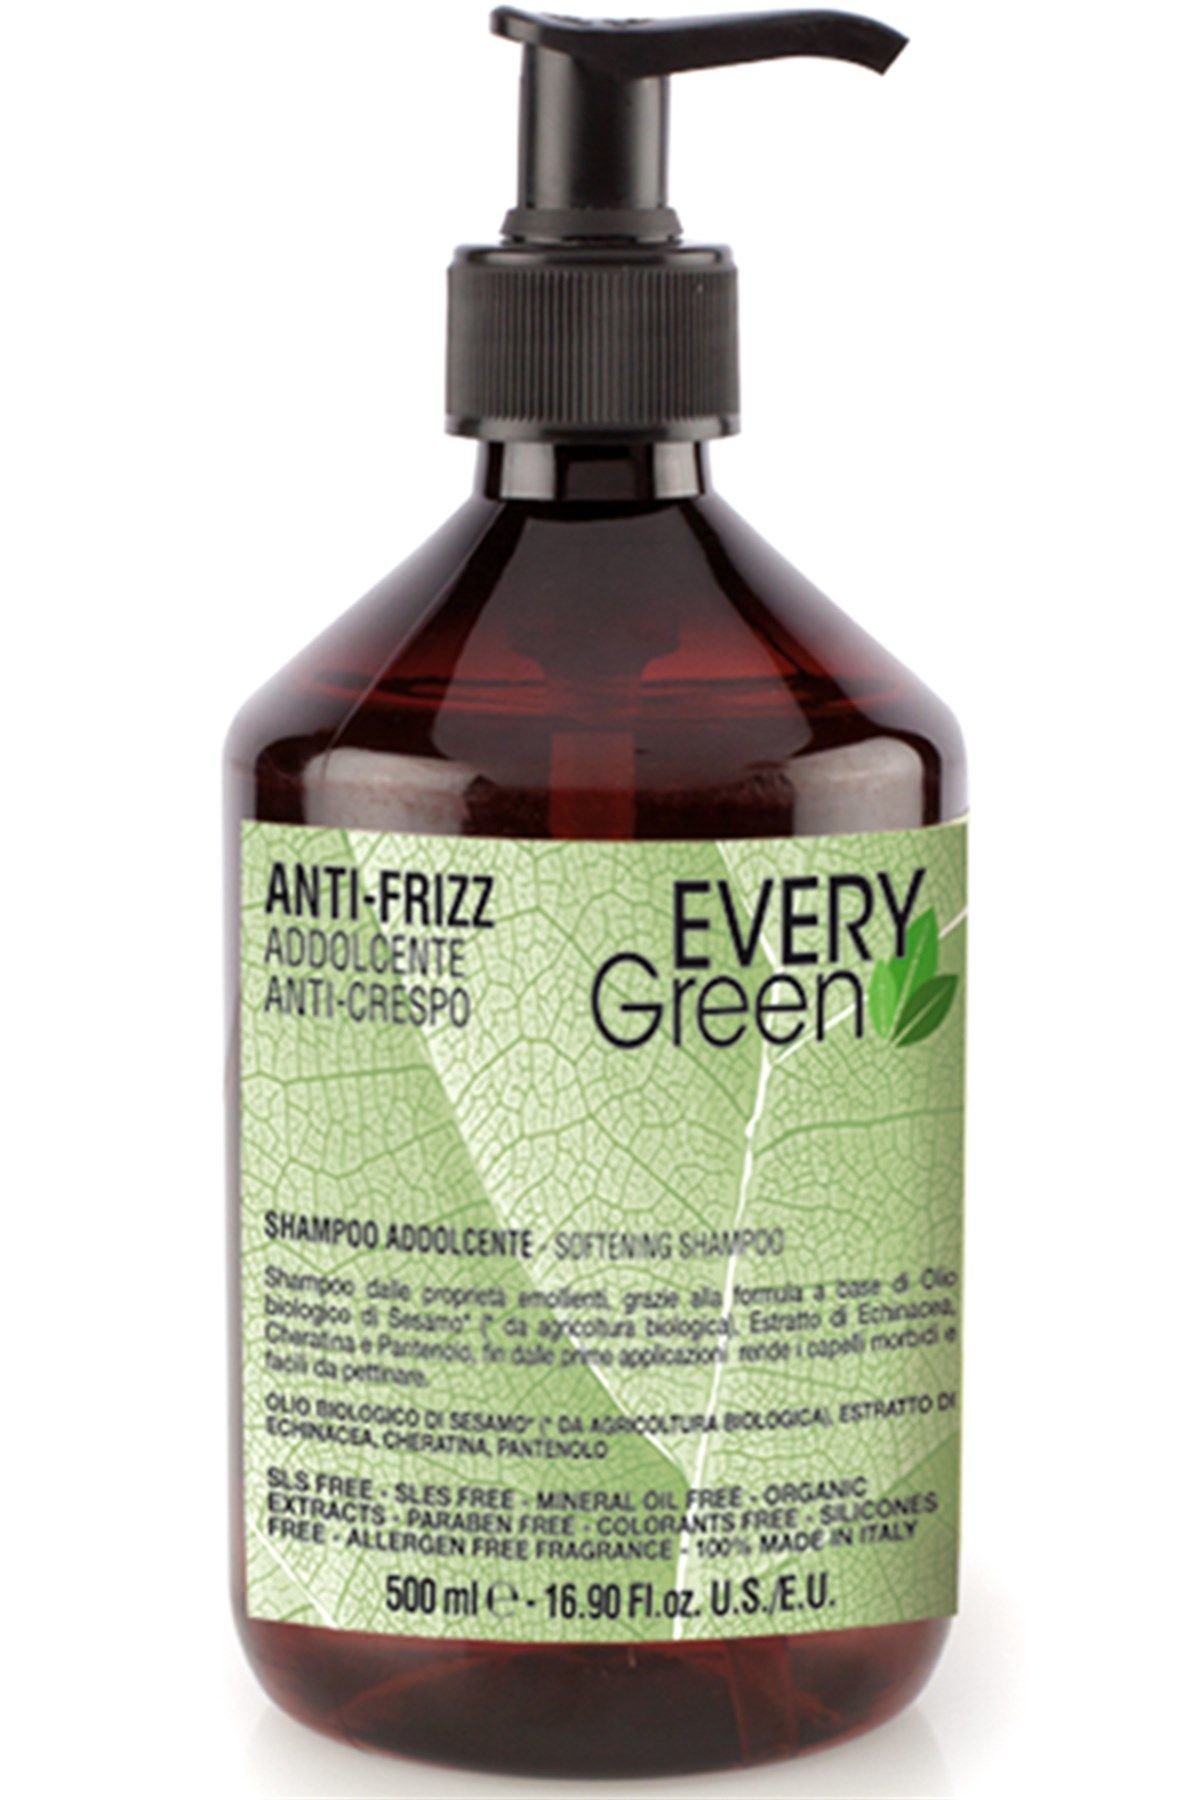 EveryGreen Anti Frizz Softening Shampoo - Kabaran Saçlara Özel Bakım Şampuanı 500 Ml.